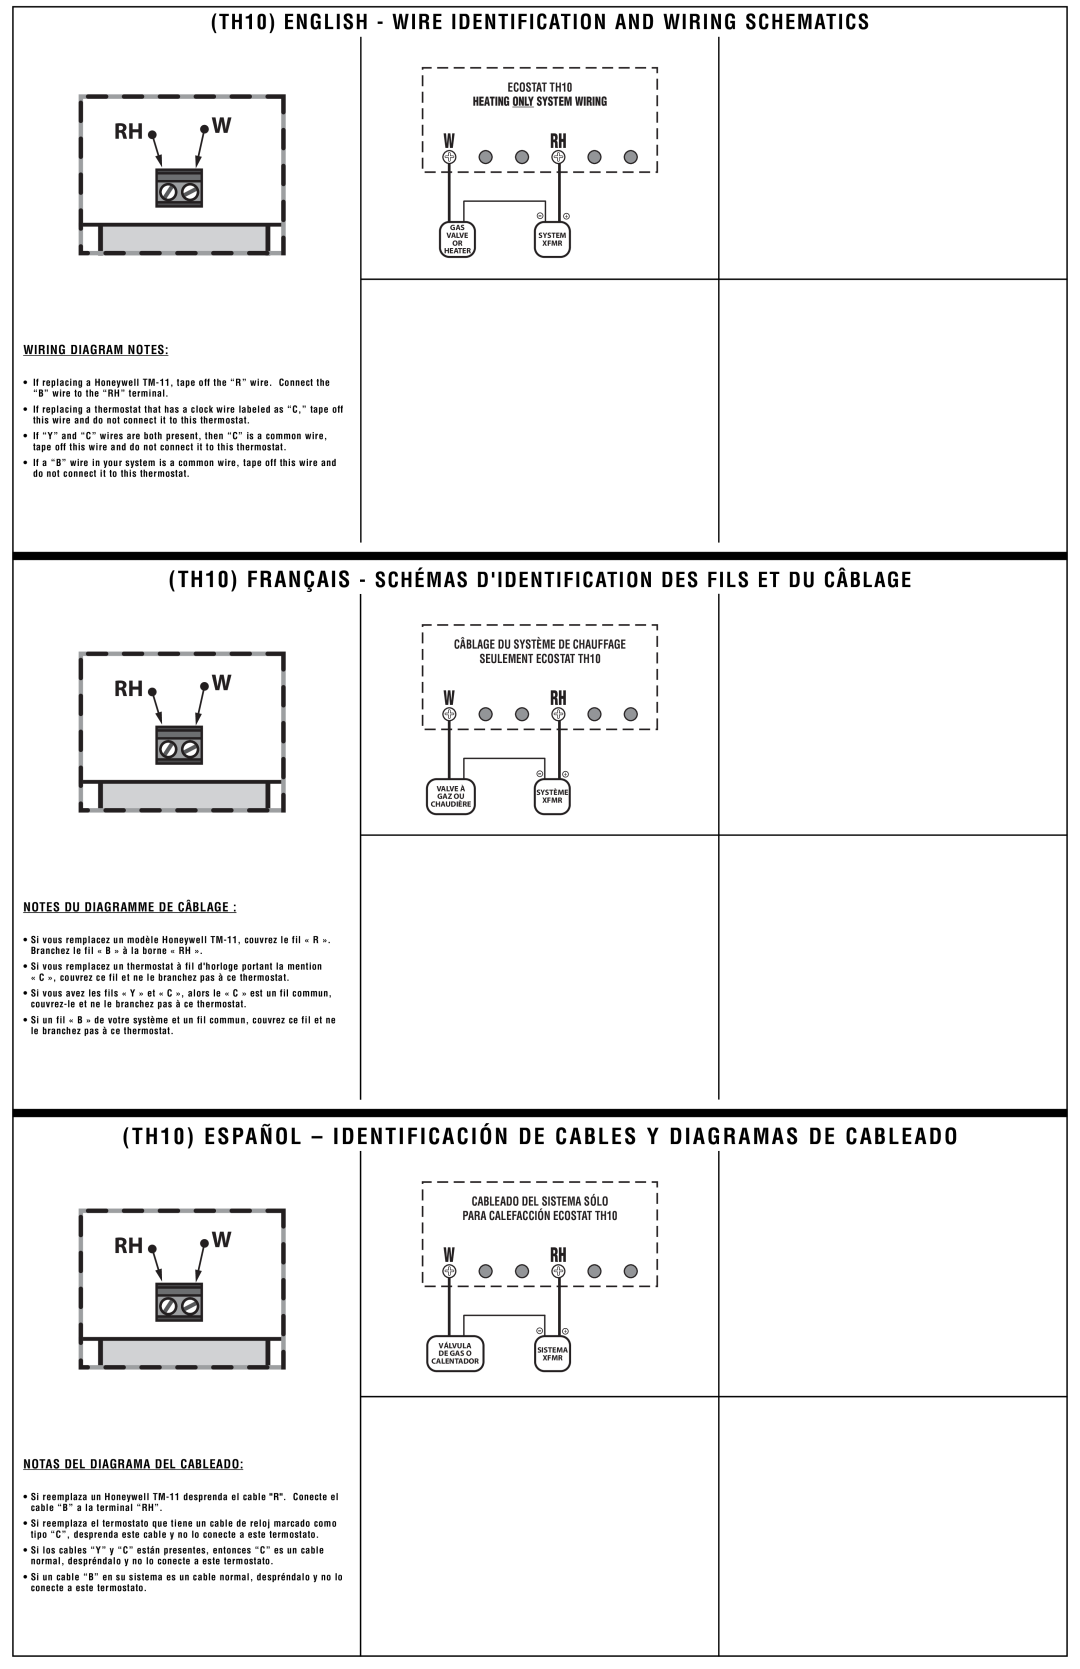 Lux Products Wiring Diagram Notes, Notes Du Diagramme De Câblage, Notas Del Diagrama Del Cableado, W Rh, ECOSTAT TH10 